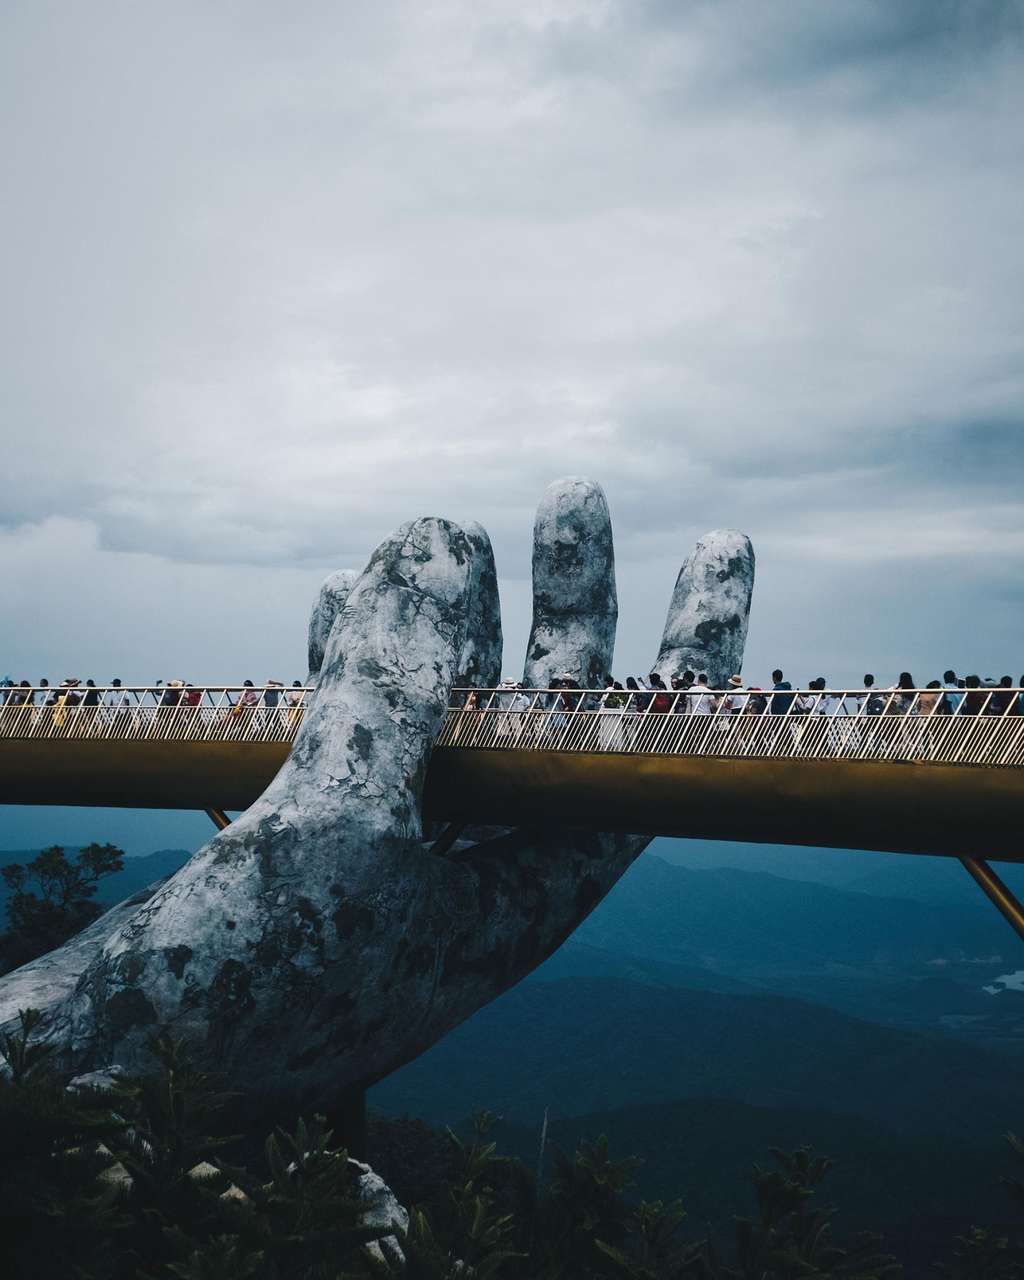 Le <em>Golden Bridge</em> a ouvert mi-2018 près de Da Nang, au Vietnam.  Il est très vite devenu une attraction attirant beaucoup de curieux. © @_CATRICORN_, Instagram